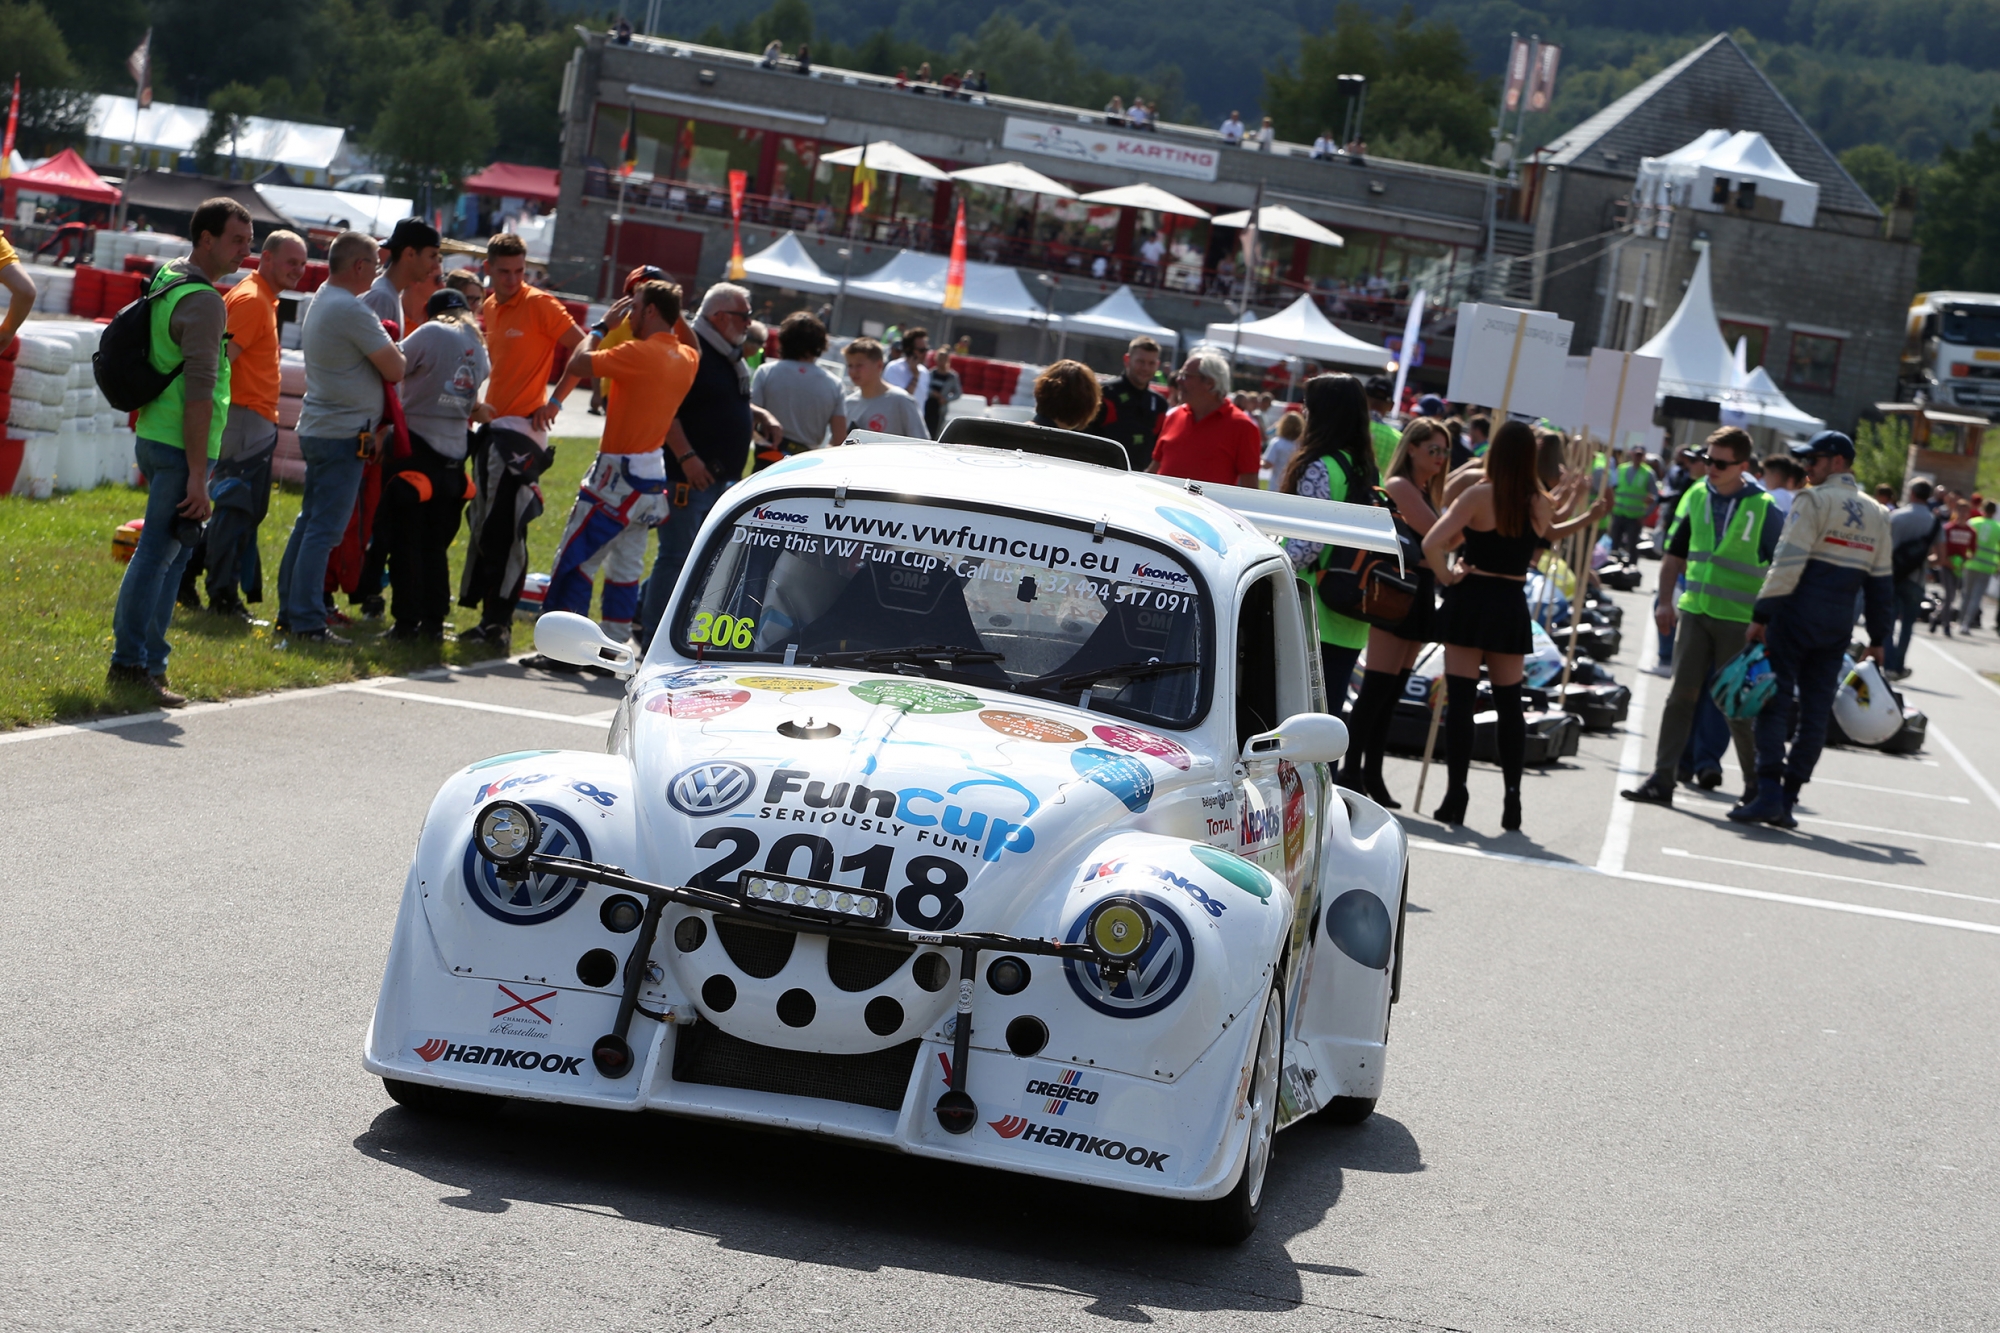 image 2 - De VW Fun Cup sterk vertegenwoordigd in de 24 Uur Karting van Francorchamps 